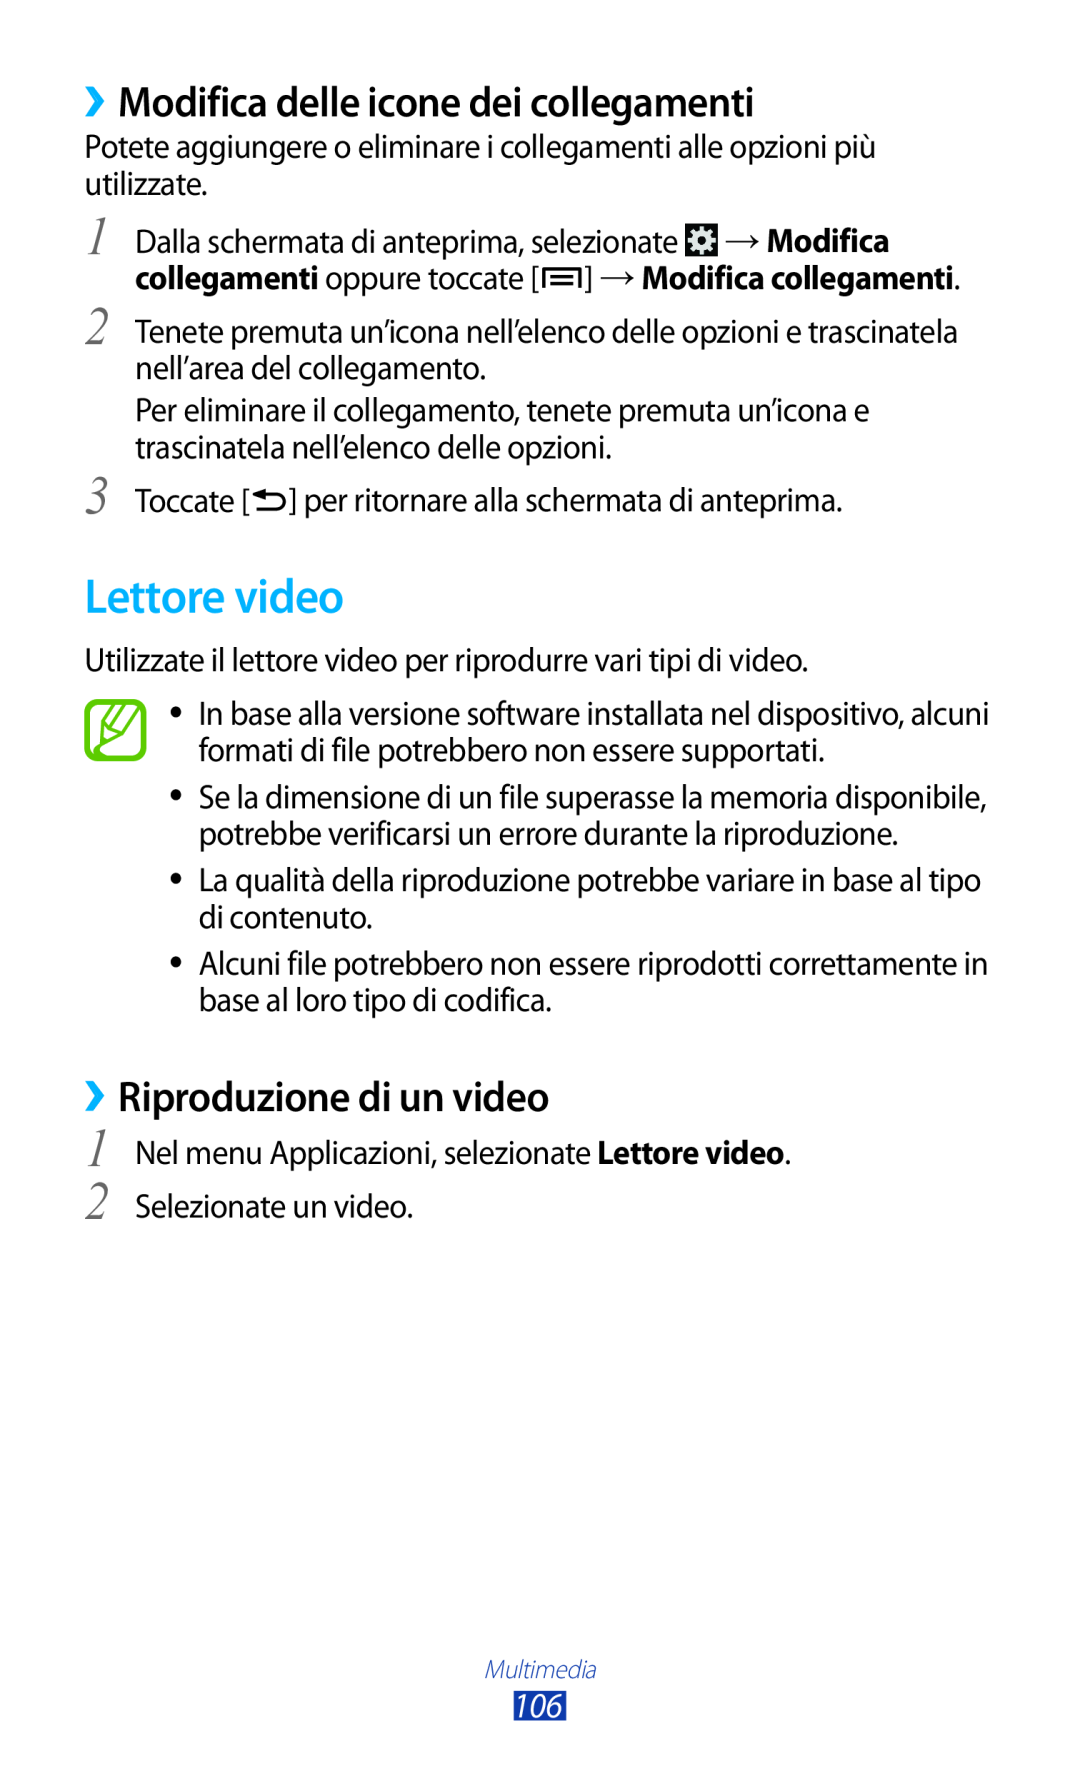 Samsung GT-N7000ZBEWIN, GT-N7000ZBAXEO Lettore video, ››Modifica delle icone dei collegamenti, ››Riproduzione di un video 